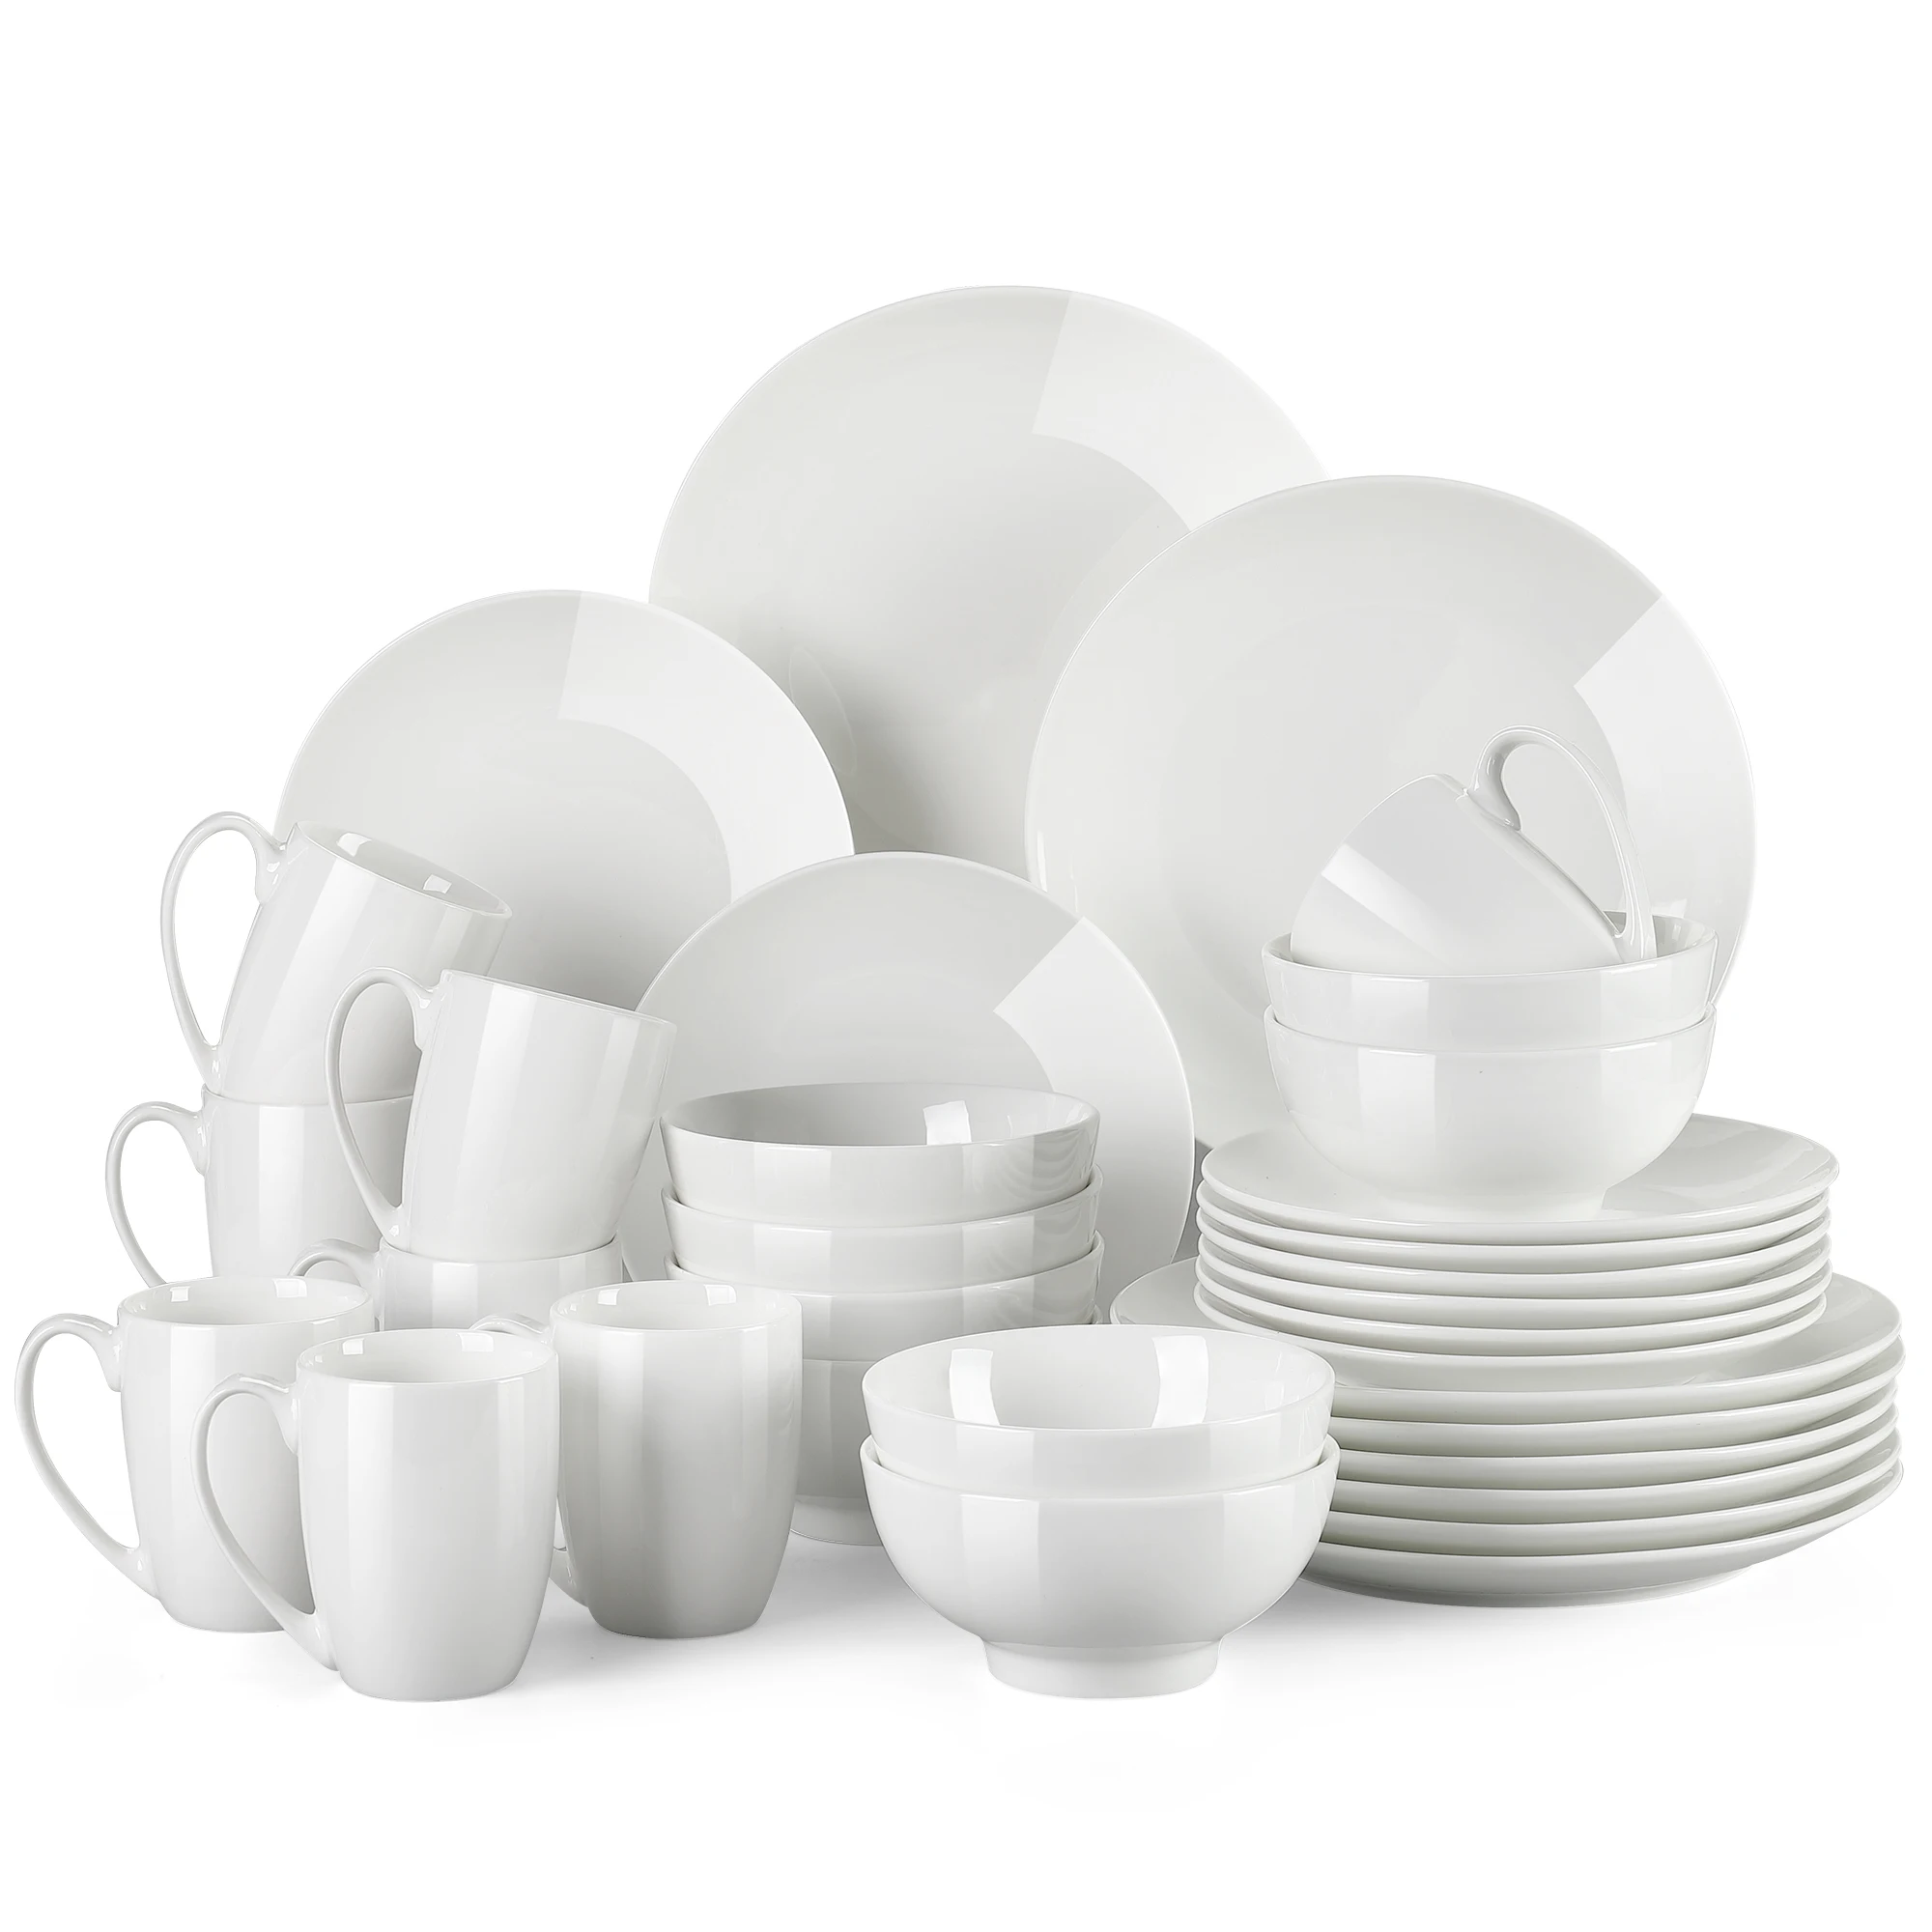 

LOVECASA DS 16/32/48-Piece White Ceramic Porcelain Dinnerware Tableware Dinner Set with Dinner Plate,Dessert Plate,Bowl,Mug Set